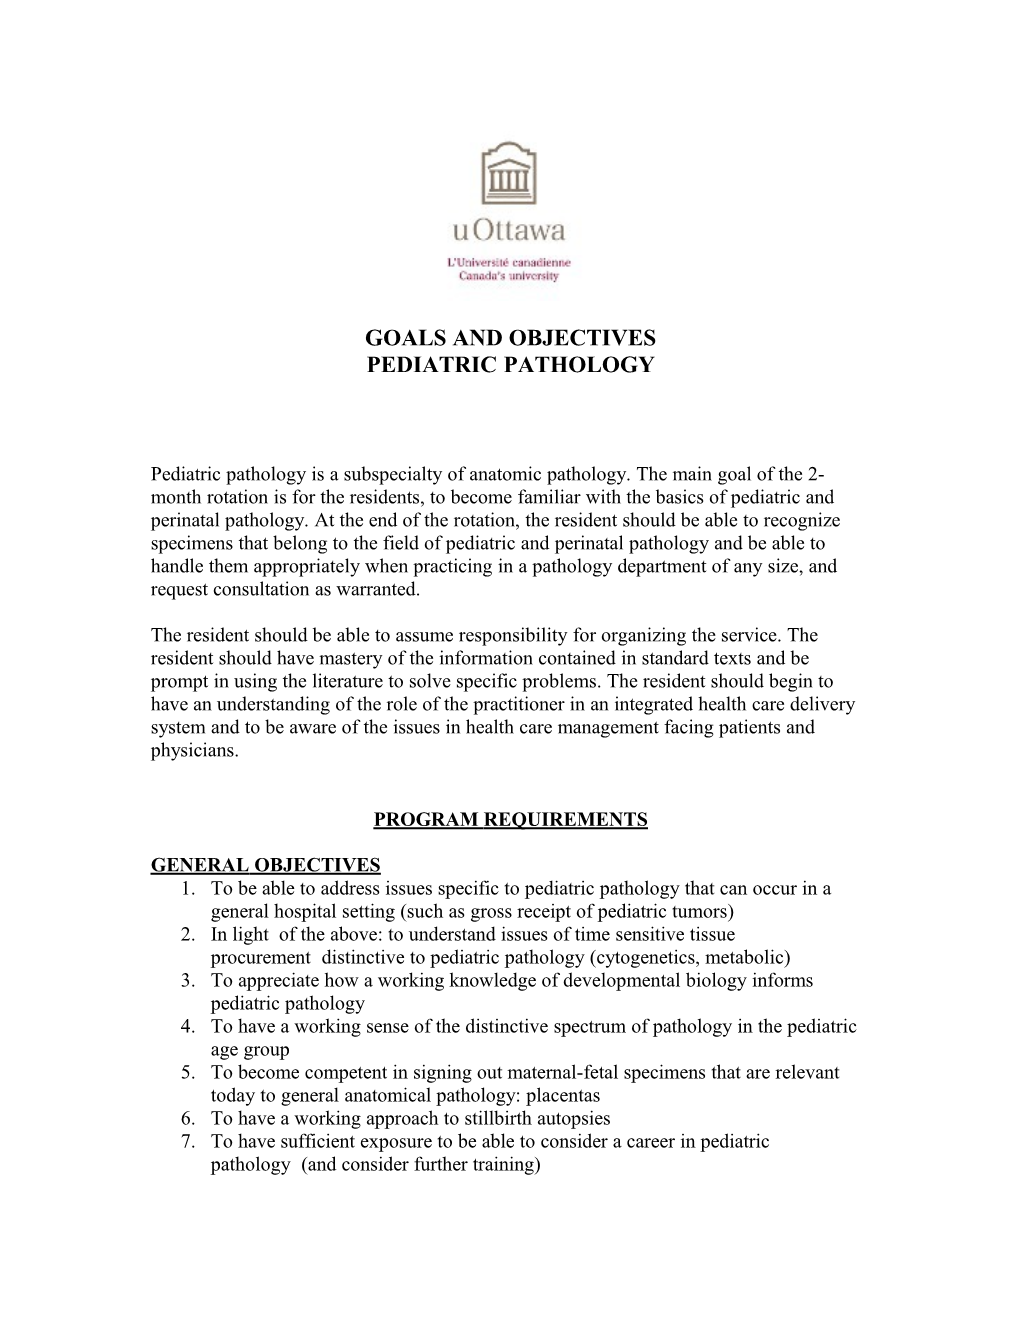 University of Ottawa Residency Program